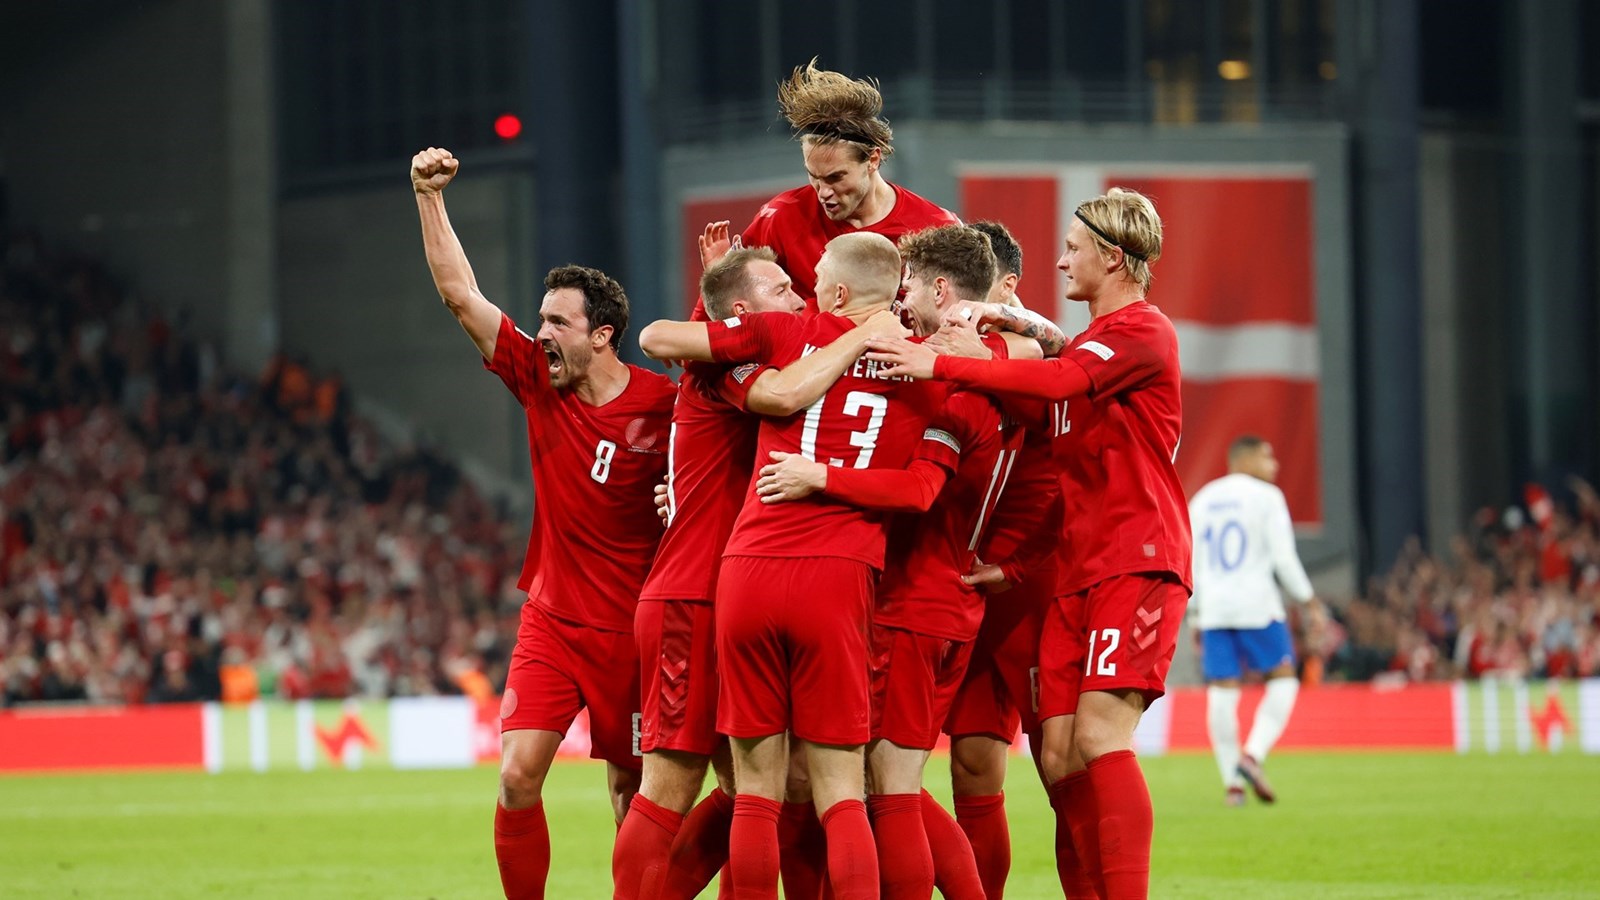 Magnifique! Solid dansk 2-0-sejr over Frankrig